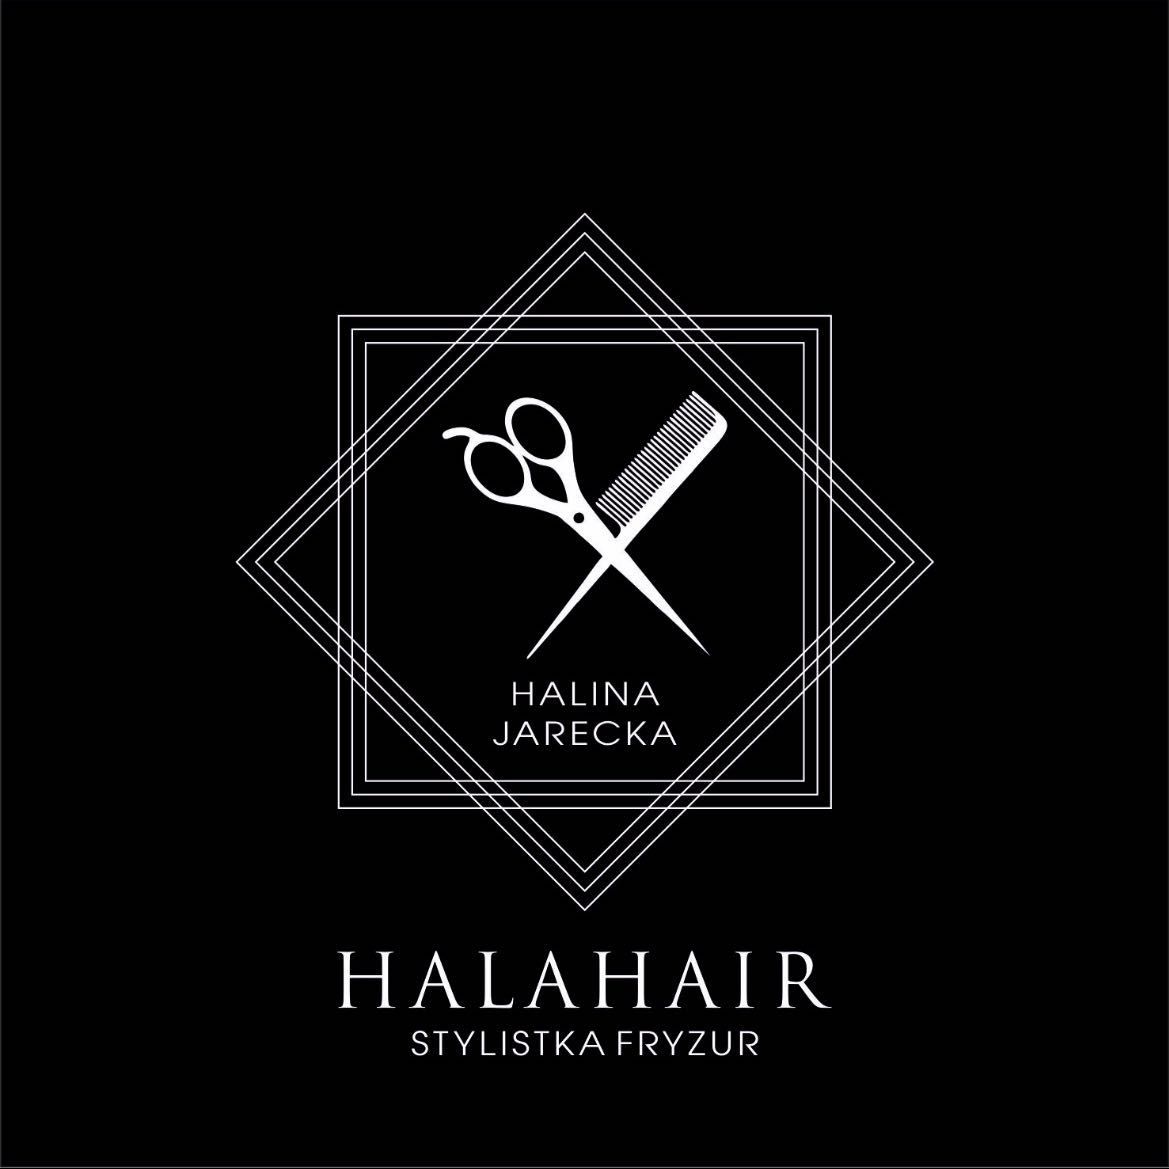 HalaHair- stylistka fryzur, Sylwestra Szpilowskiego 15, 62-800, Kalisz